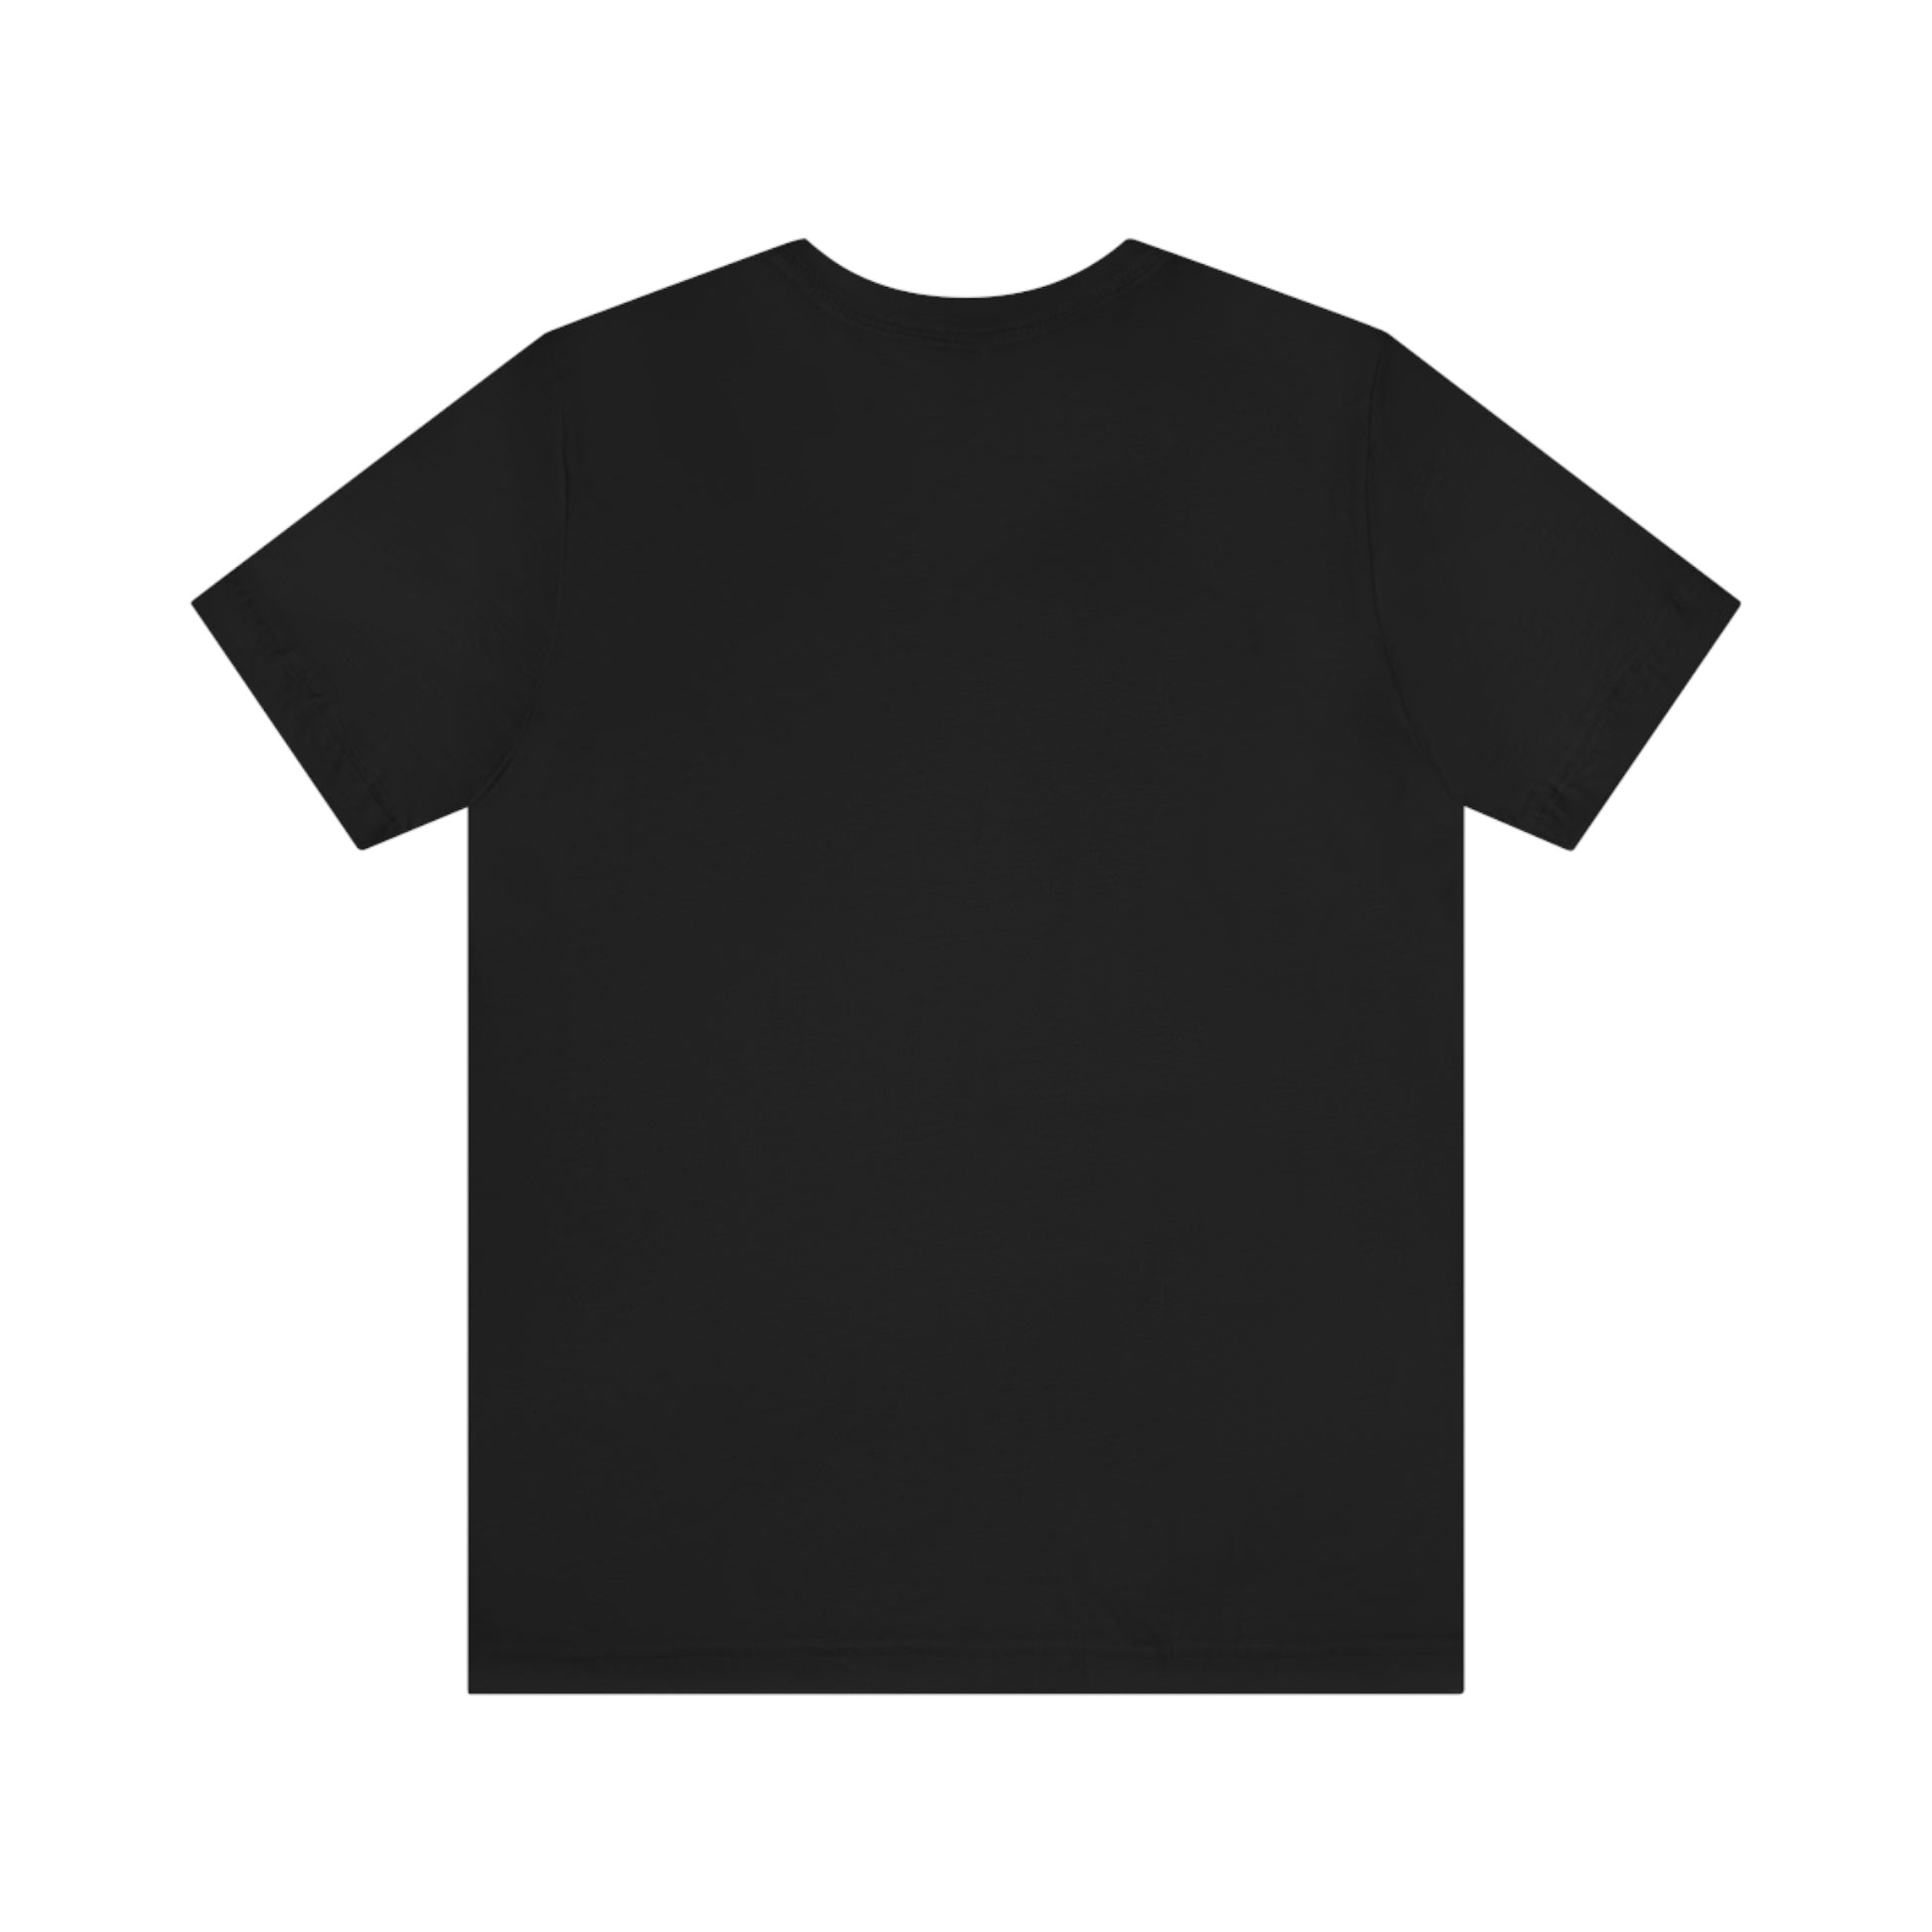 Slowpoke Team Shirt Black